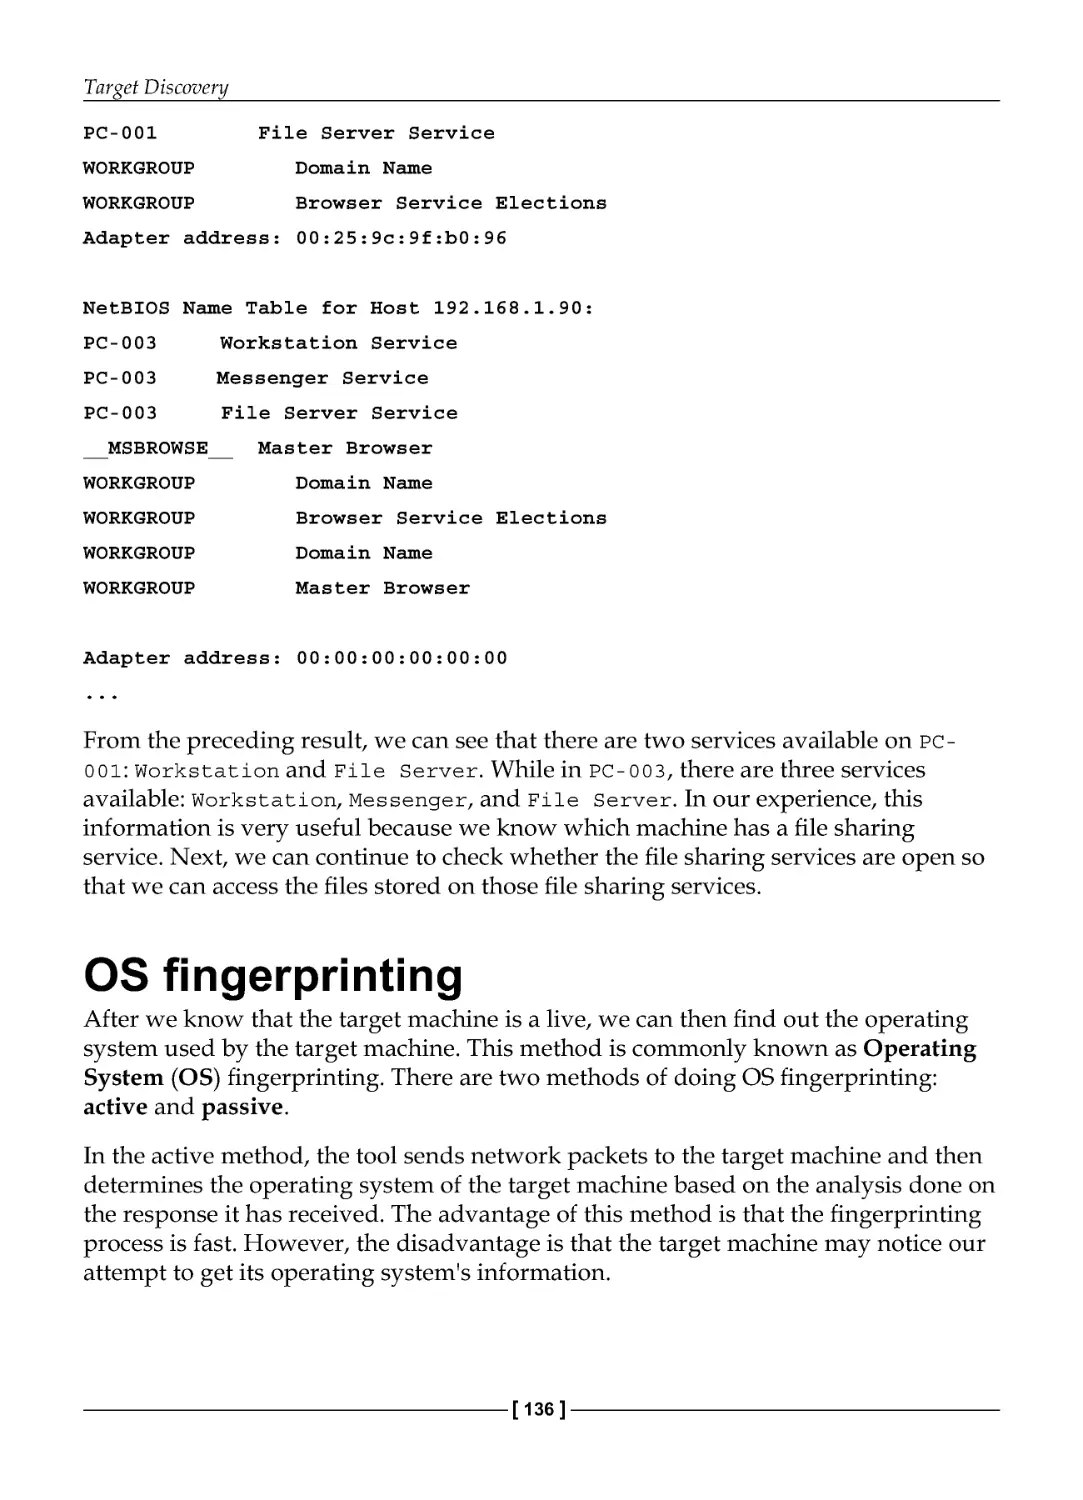 OS fingerprinting